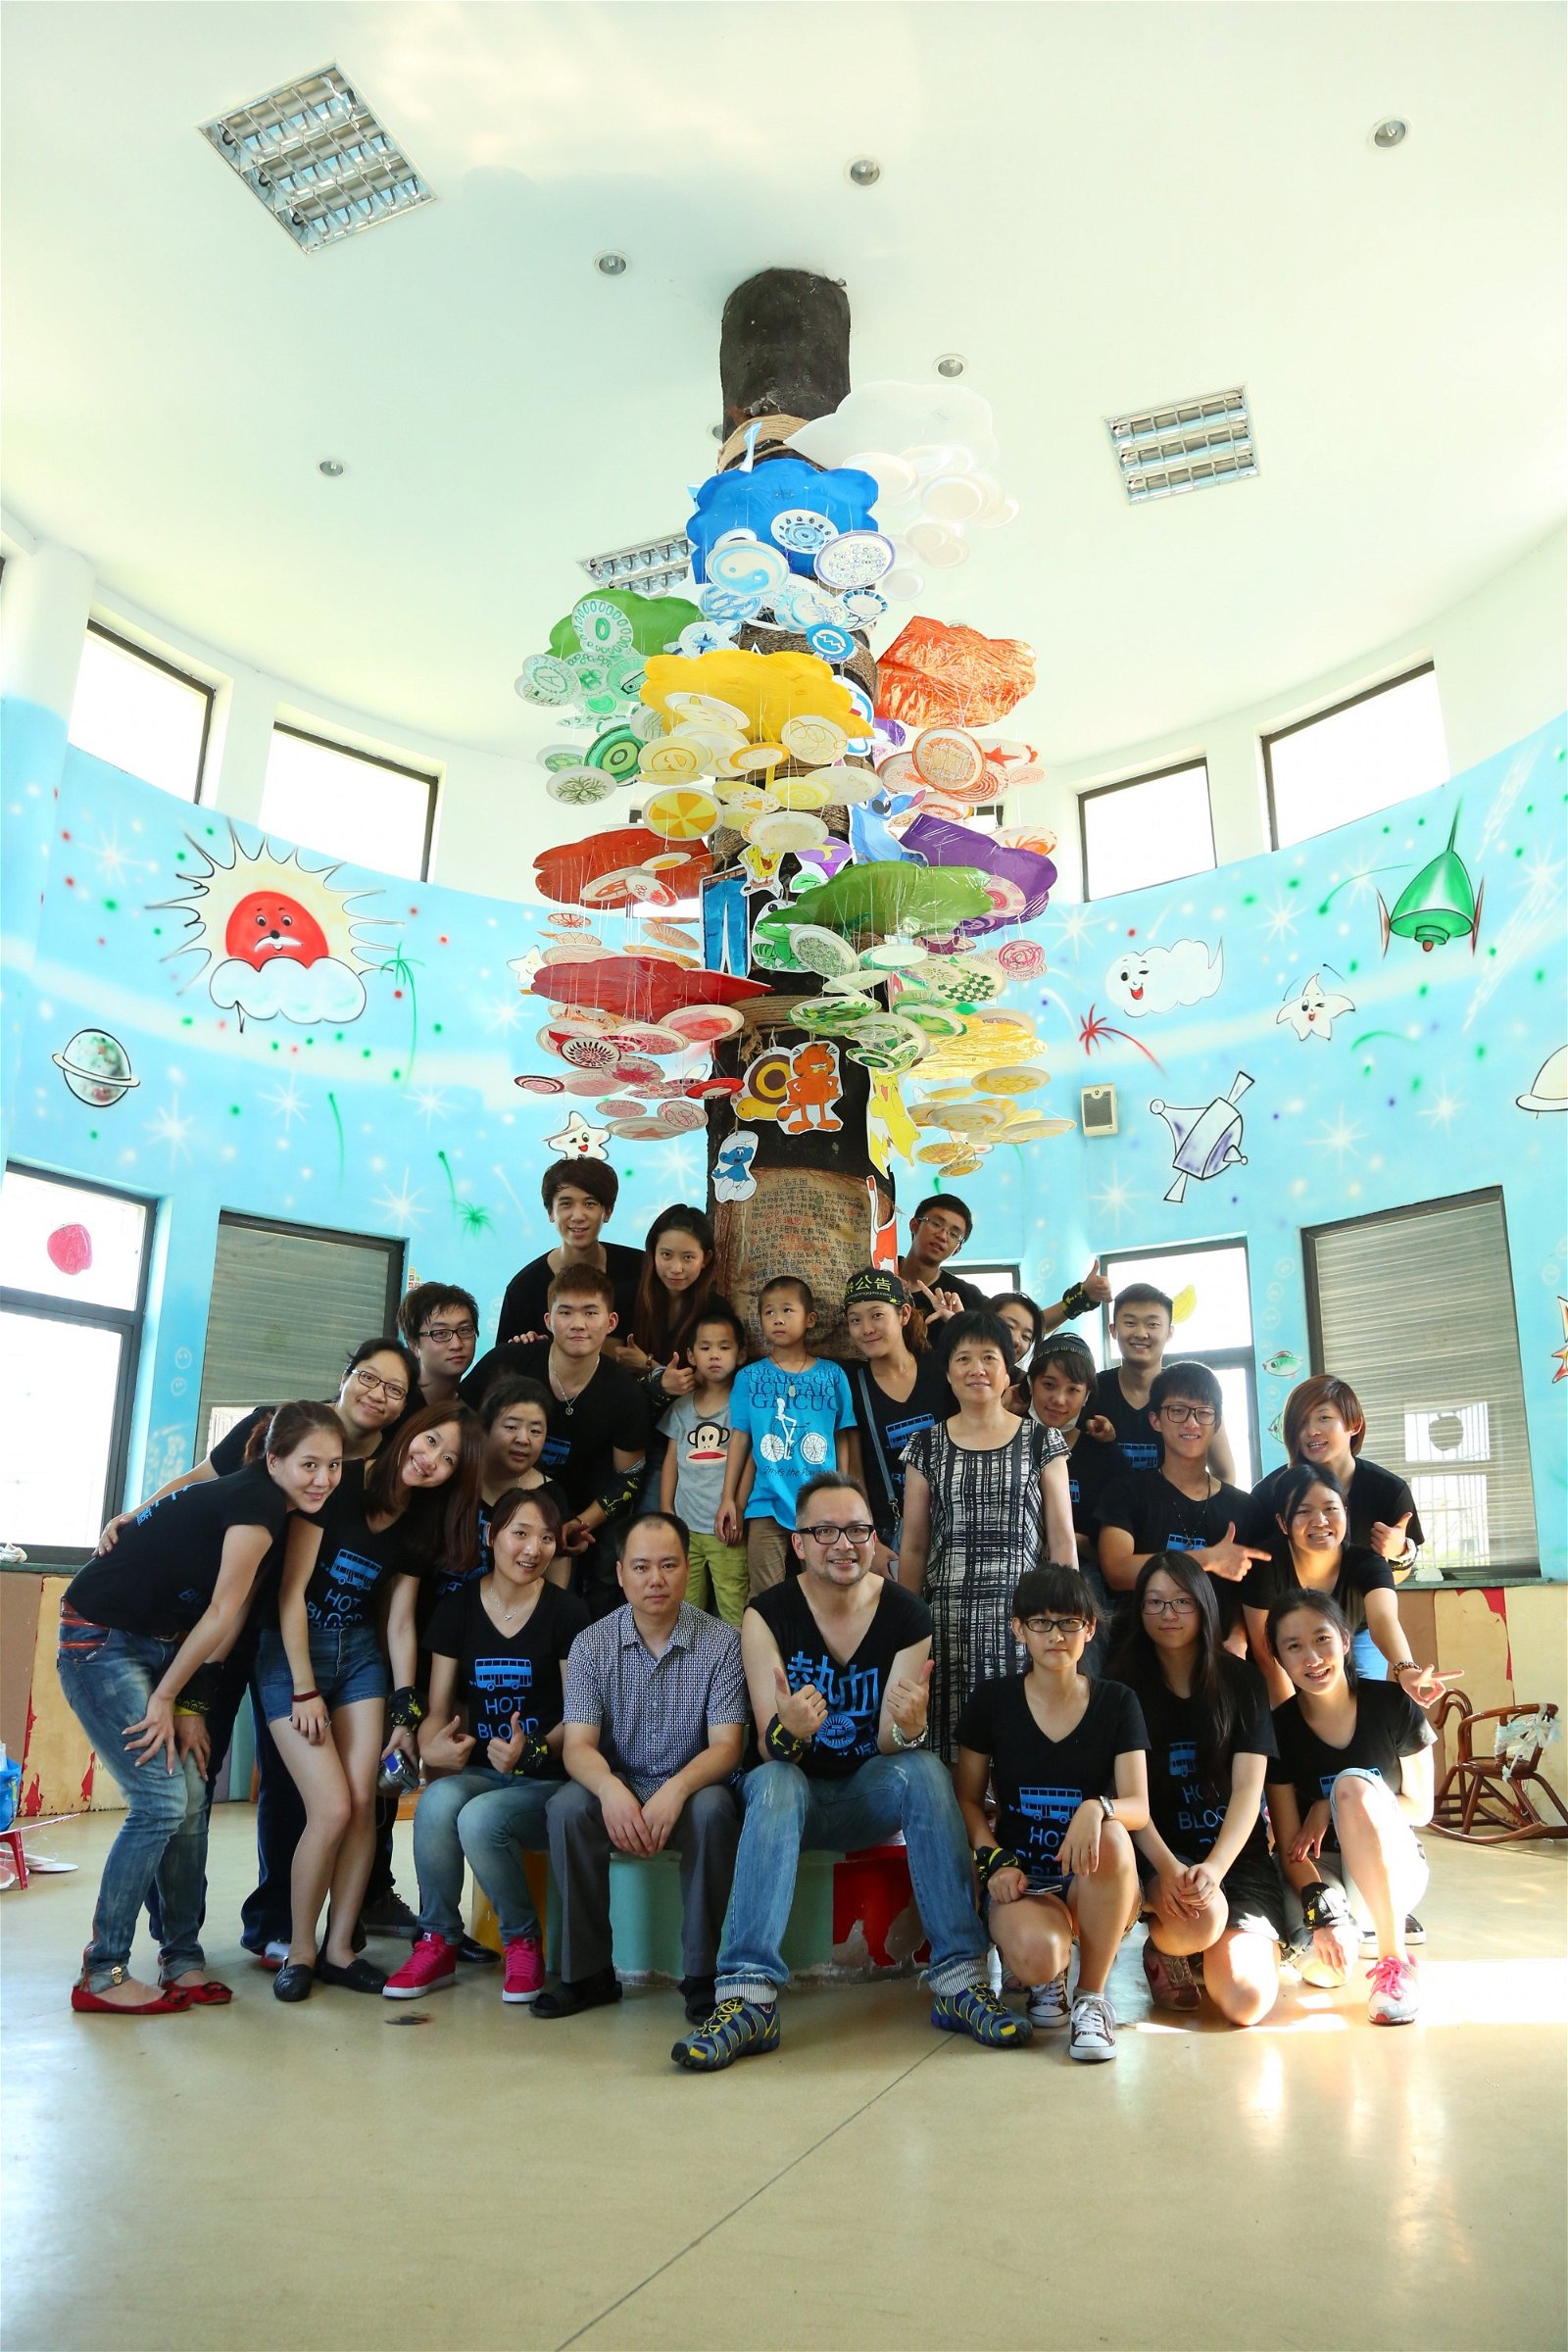 Jason于2013年开始《热血巴士》，聚集马来西亚、台湾、香港、澳门、中国等地的年轻人，以快闪慈善的形式下乡传爱，带领年轻人服务社会。